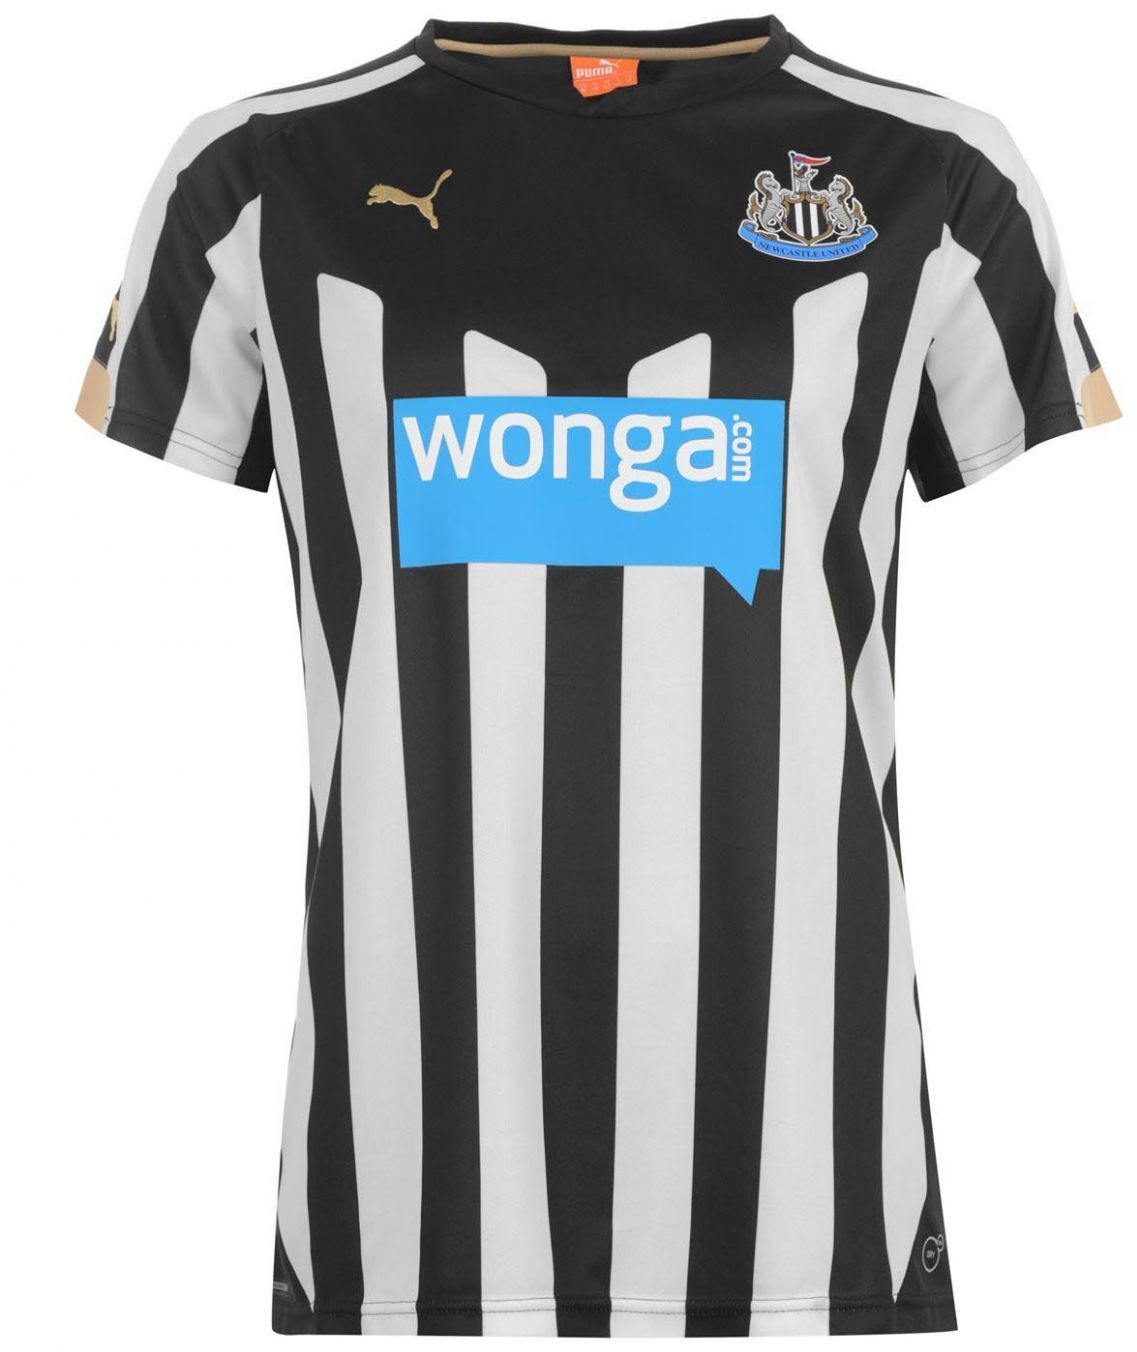 Newcastle United FC thuisshirt seizoen 2014/2015